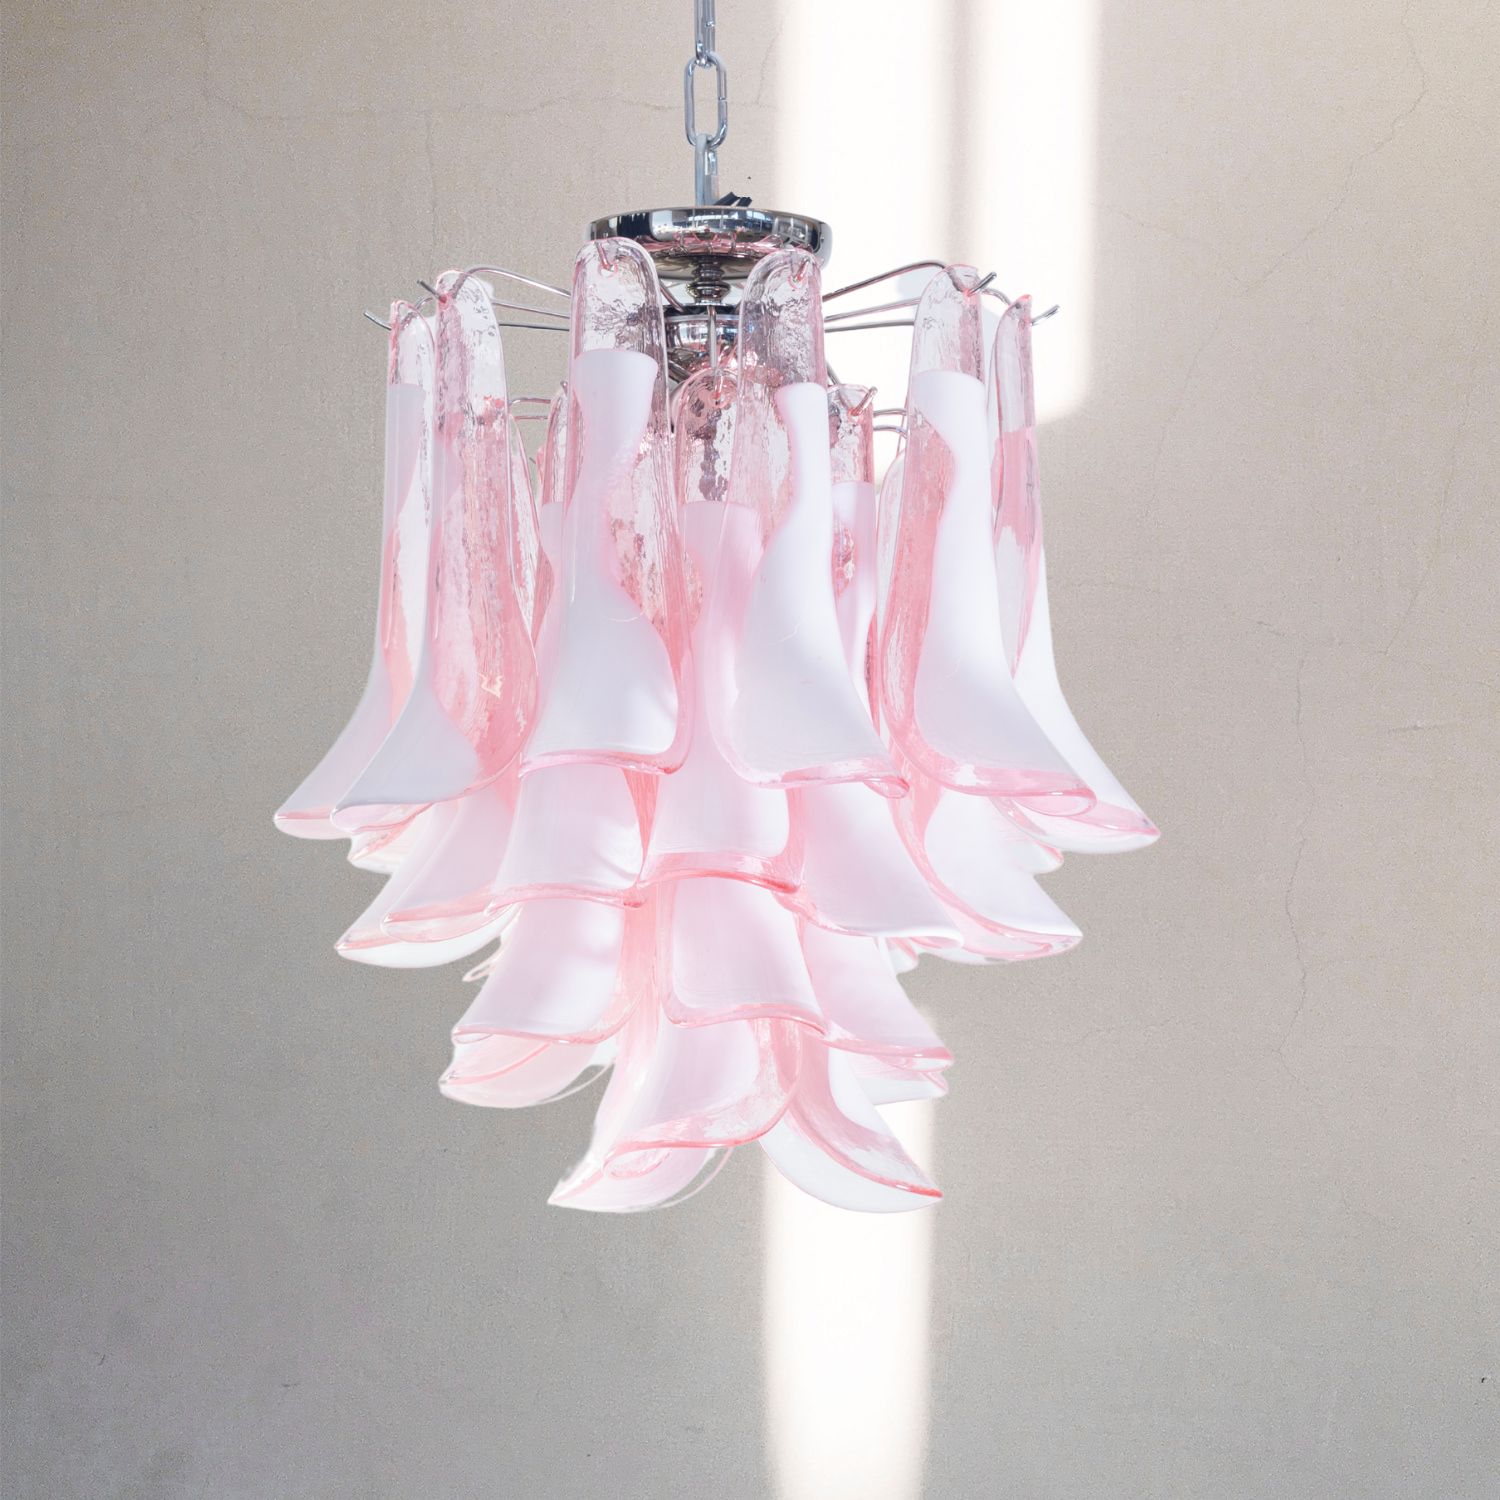 lampadario murano vintage artemide rosa prodotto dalla fabbrica lampadari Bottega Veneziana made in italy